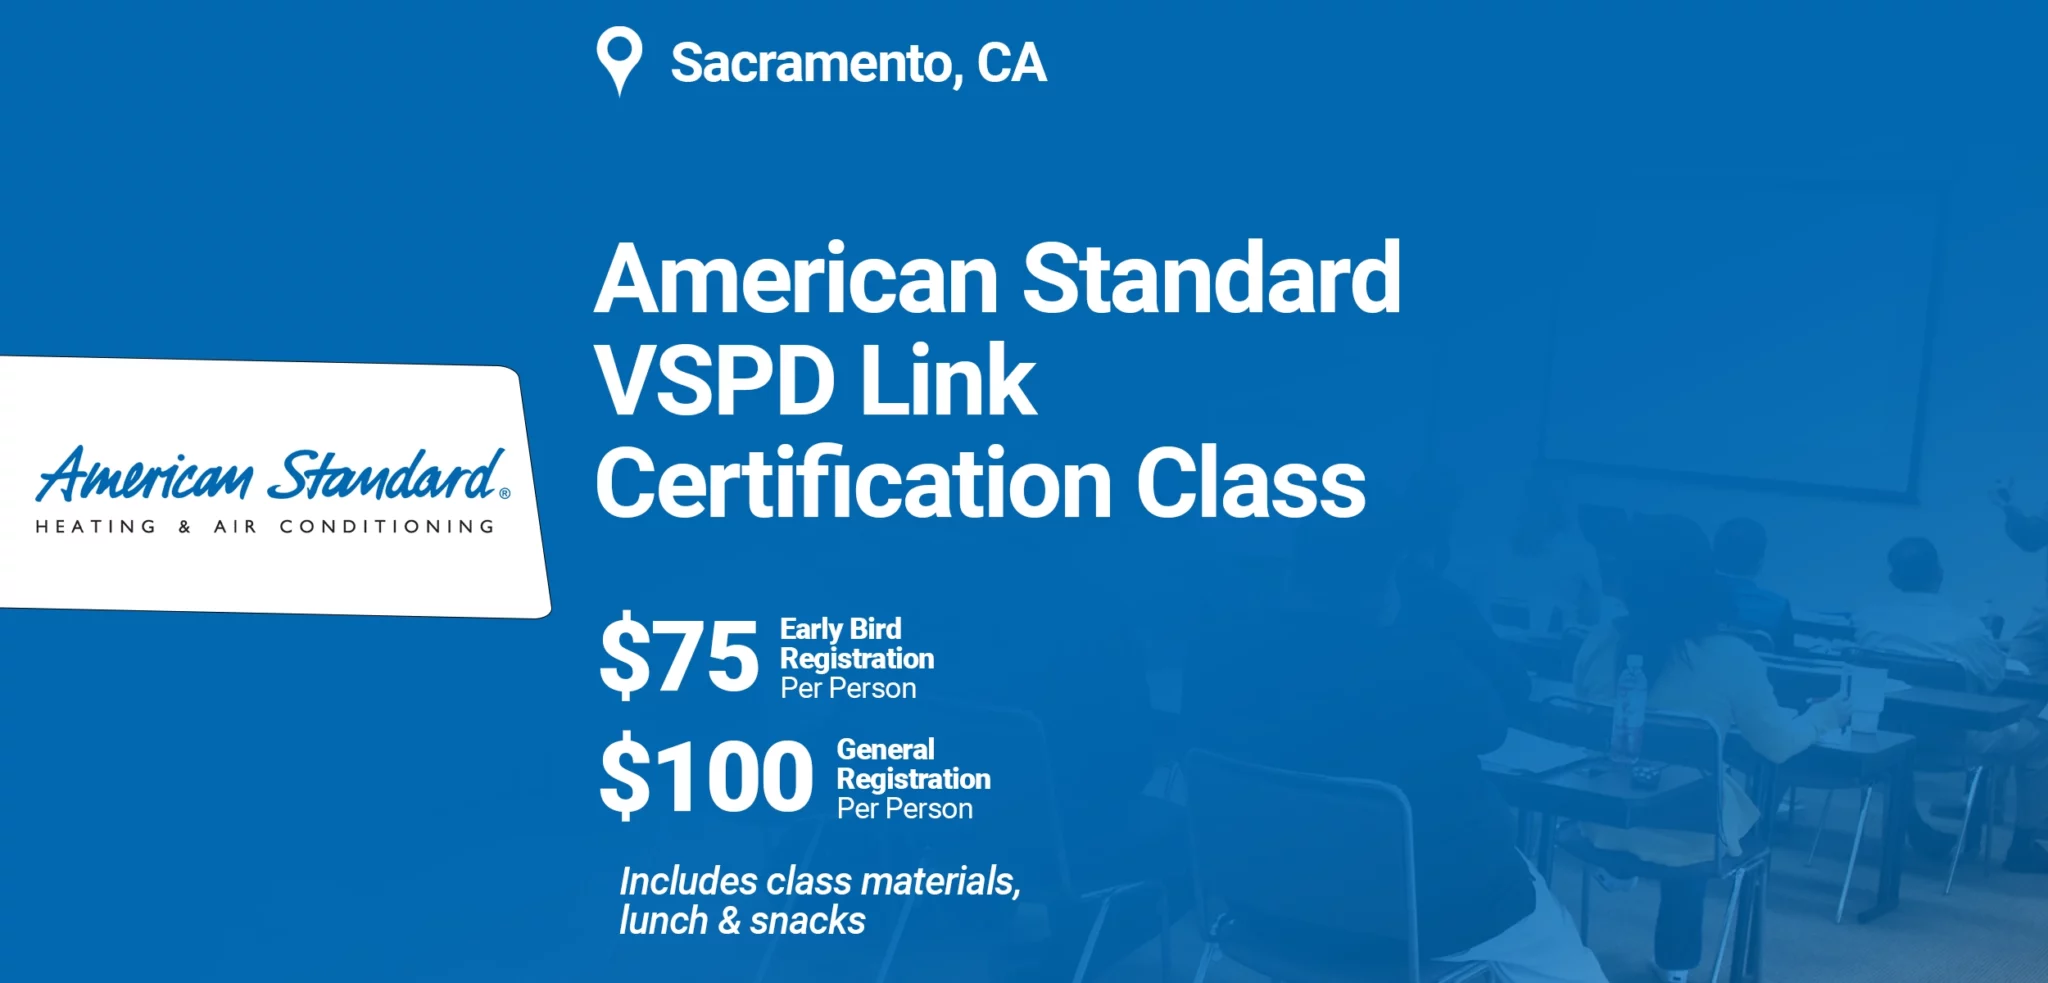 American Standard VSPD Link Certification Class